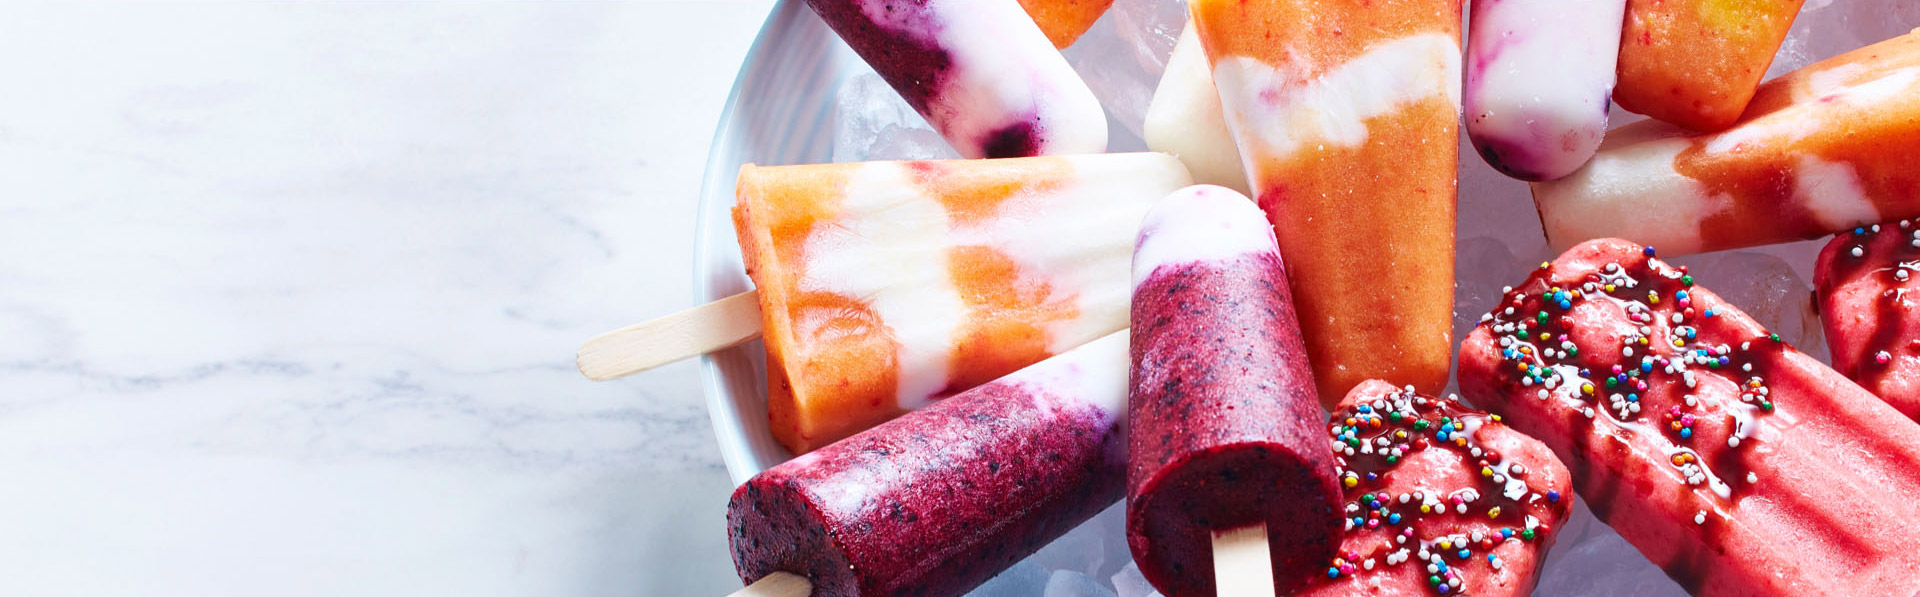 Fruit smoothie freeze-a-thon